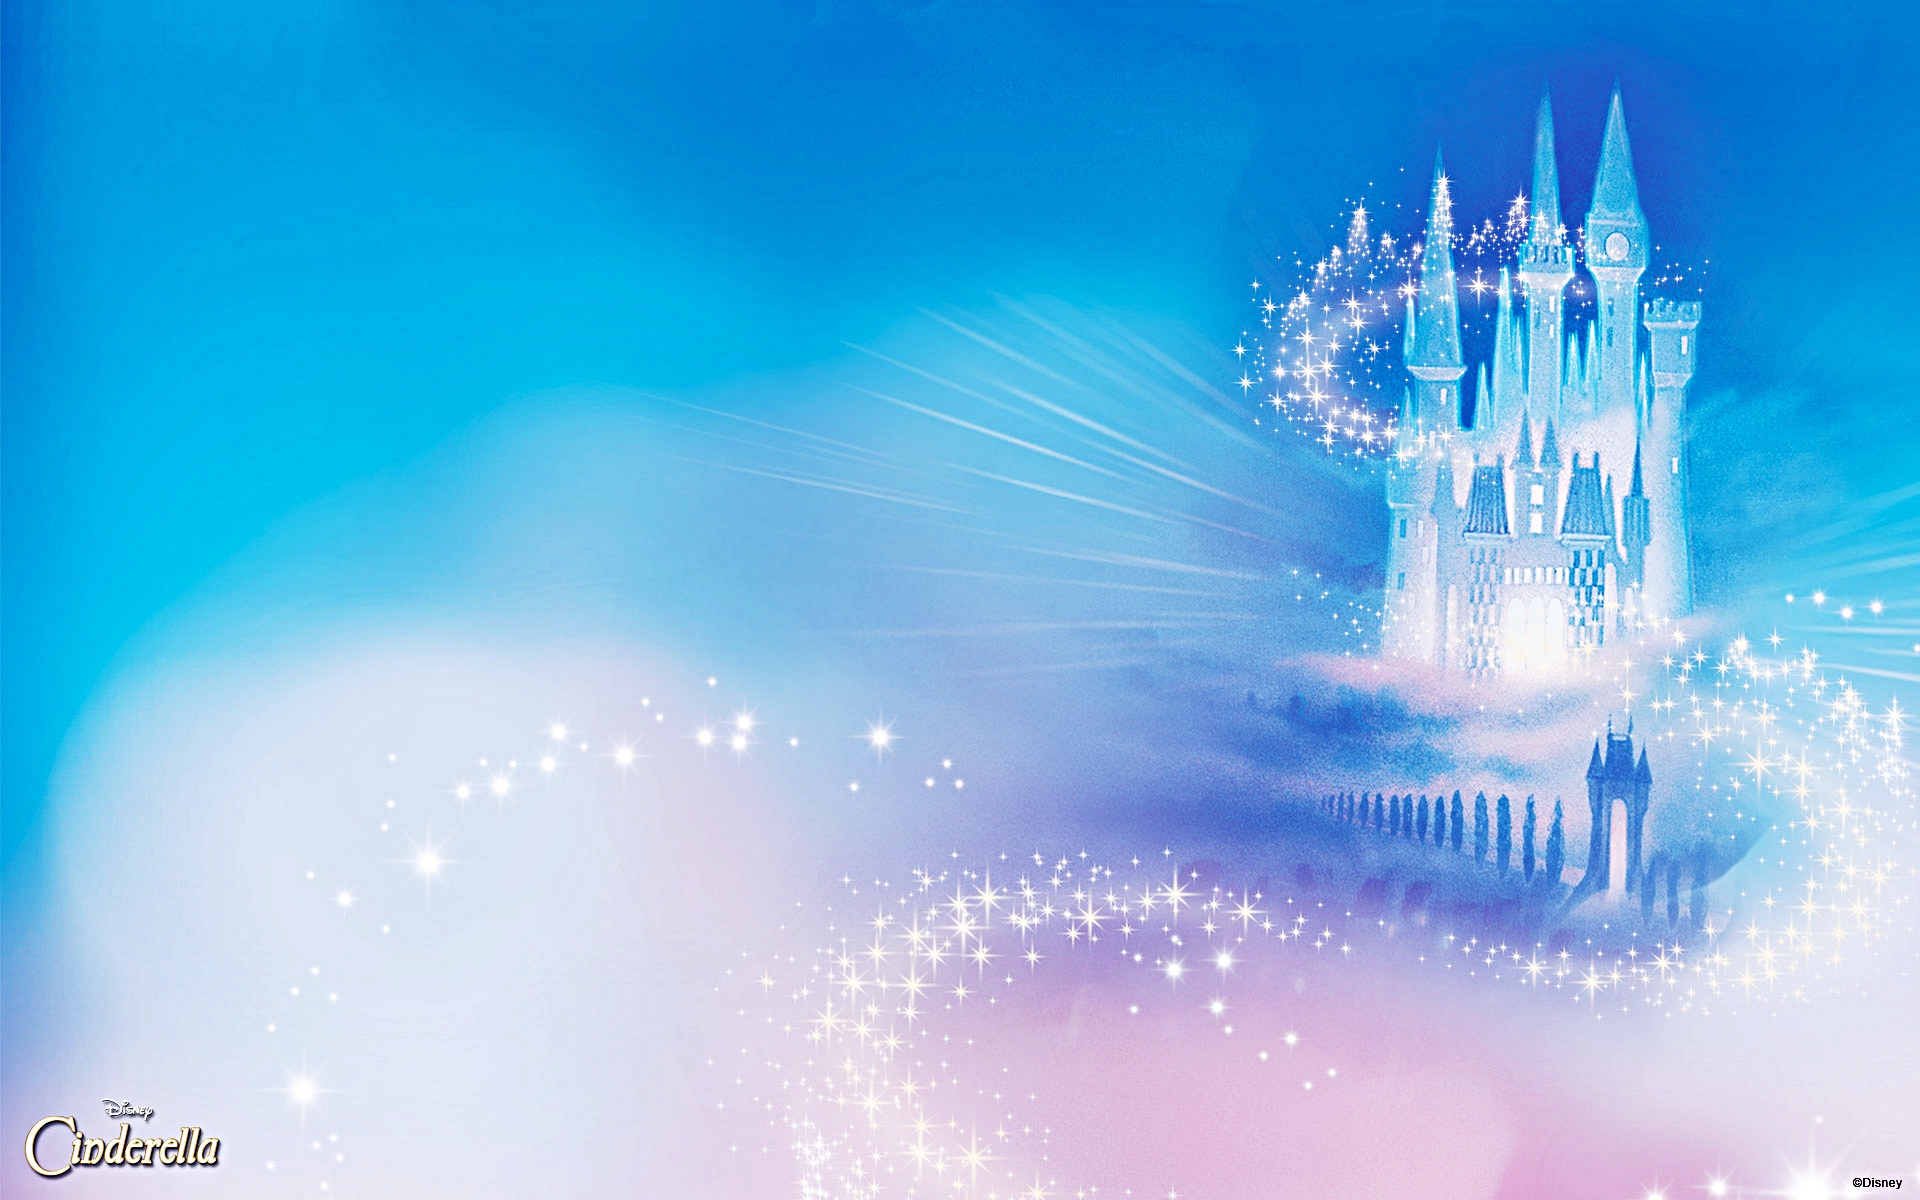 Bạn yêu thích câu chuyện cổ tích của Cinderella và muốn mang chúng vào bài thuyết trình? Đừng bỏ lỡ hình nền Cinderella của Disney trên WallpaperSafari, hoặc tham khảo những mẫu PowerPoint của Disney về Cinderella để tạo ra bài thuyết trình ấn tượng.